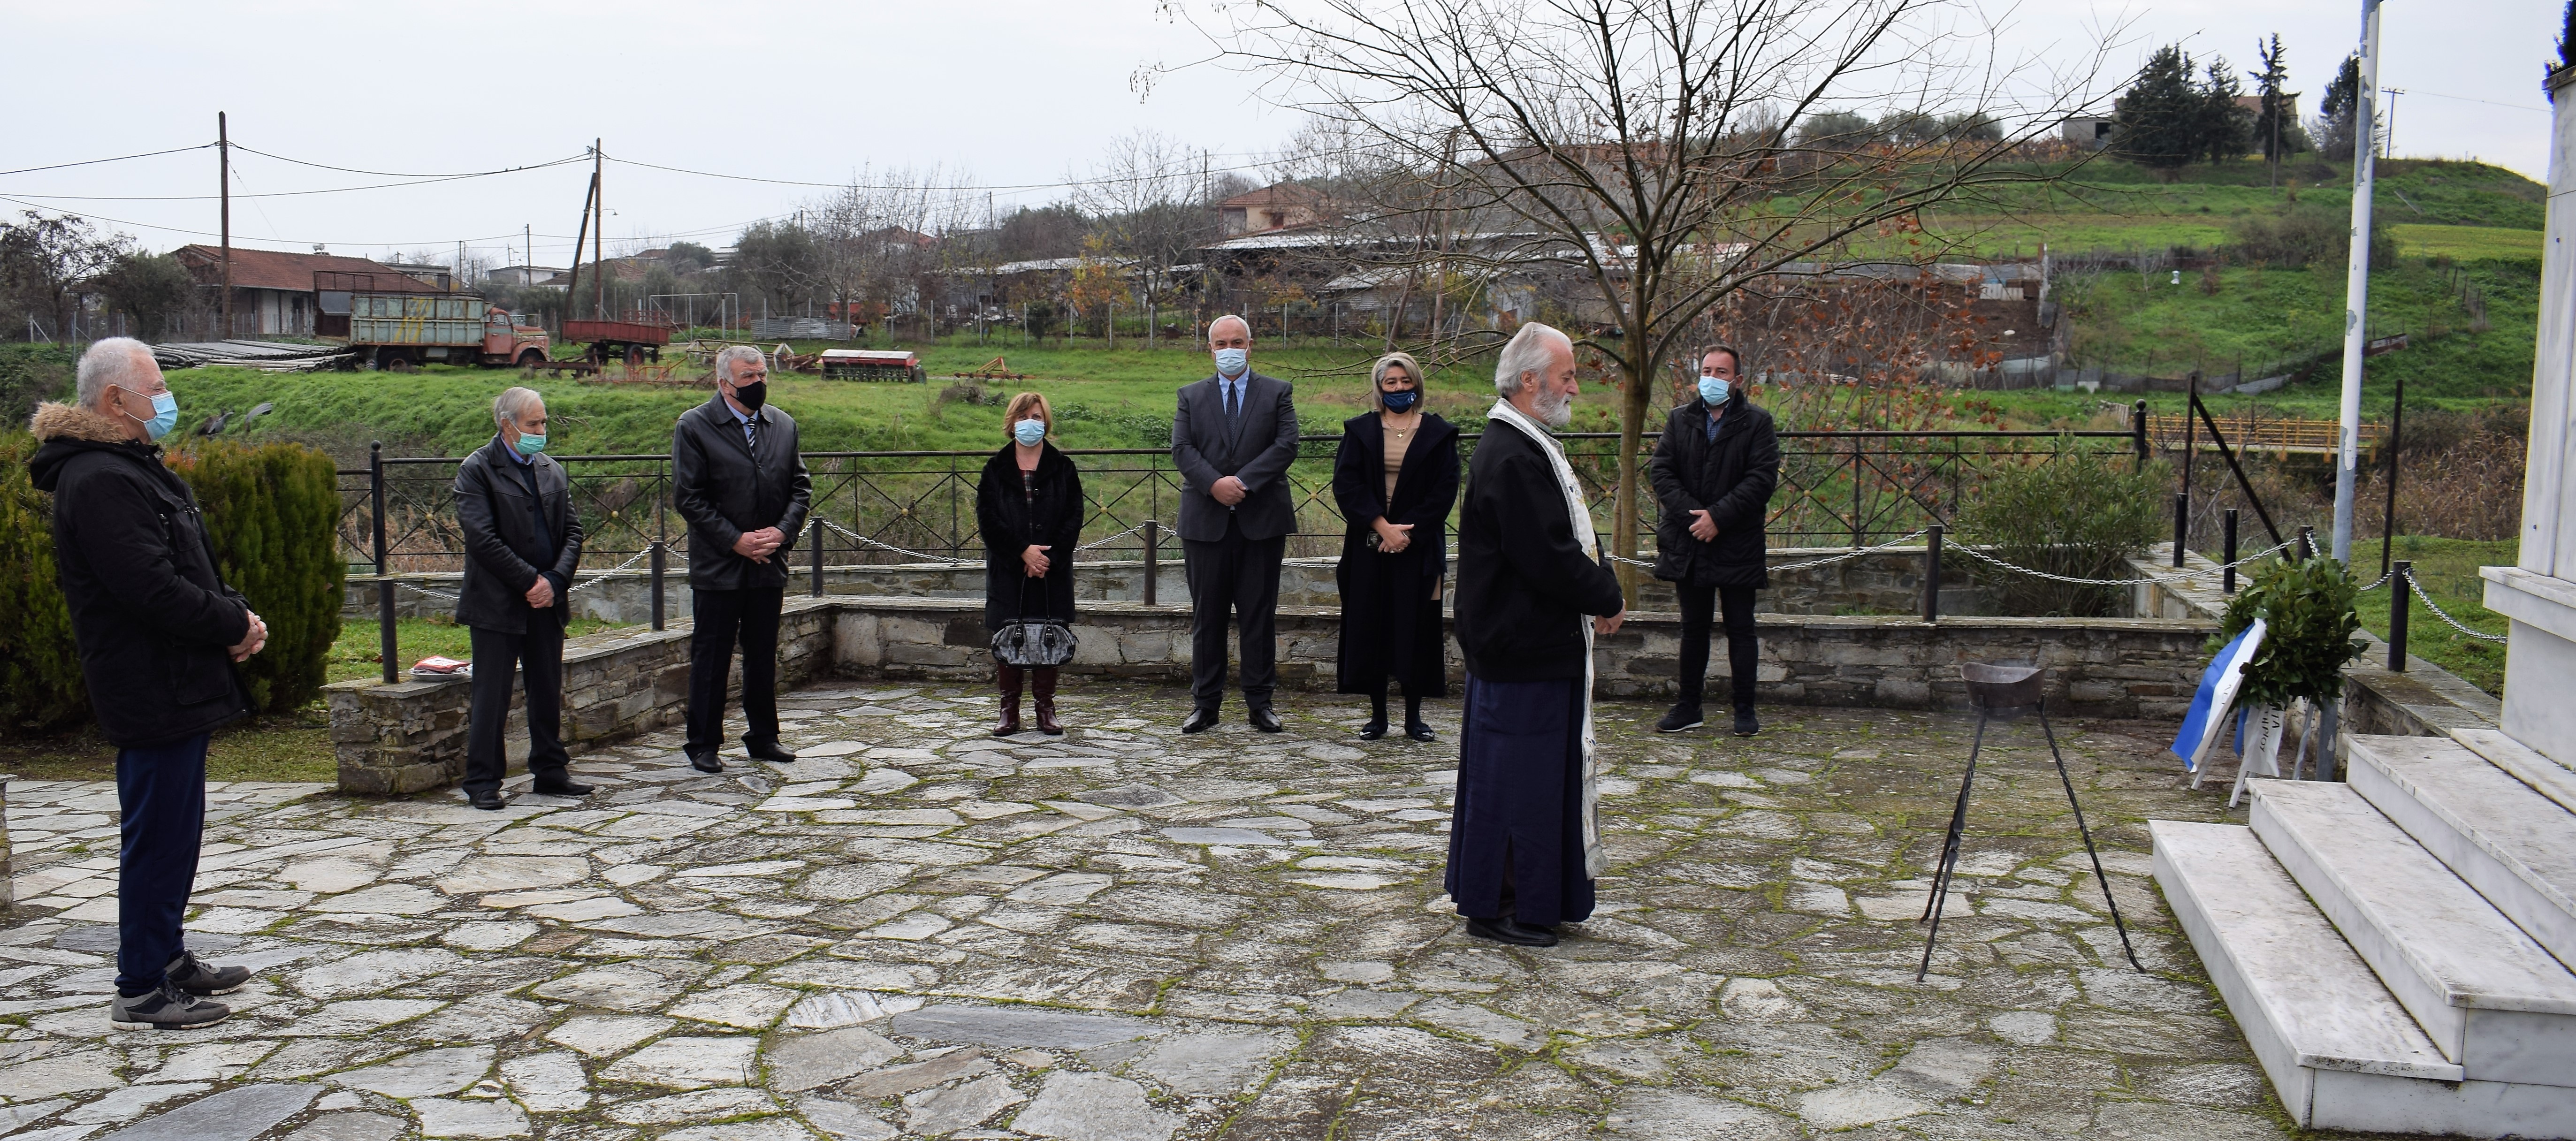 Μνημόσυνο στη μνήμη των εκτελεσθέντων πατριωτών στο Μ. Μοναστήρι